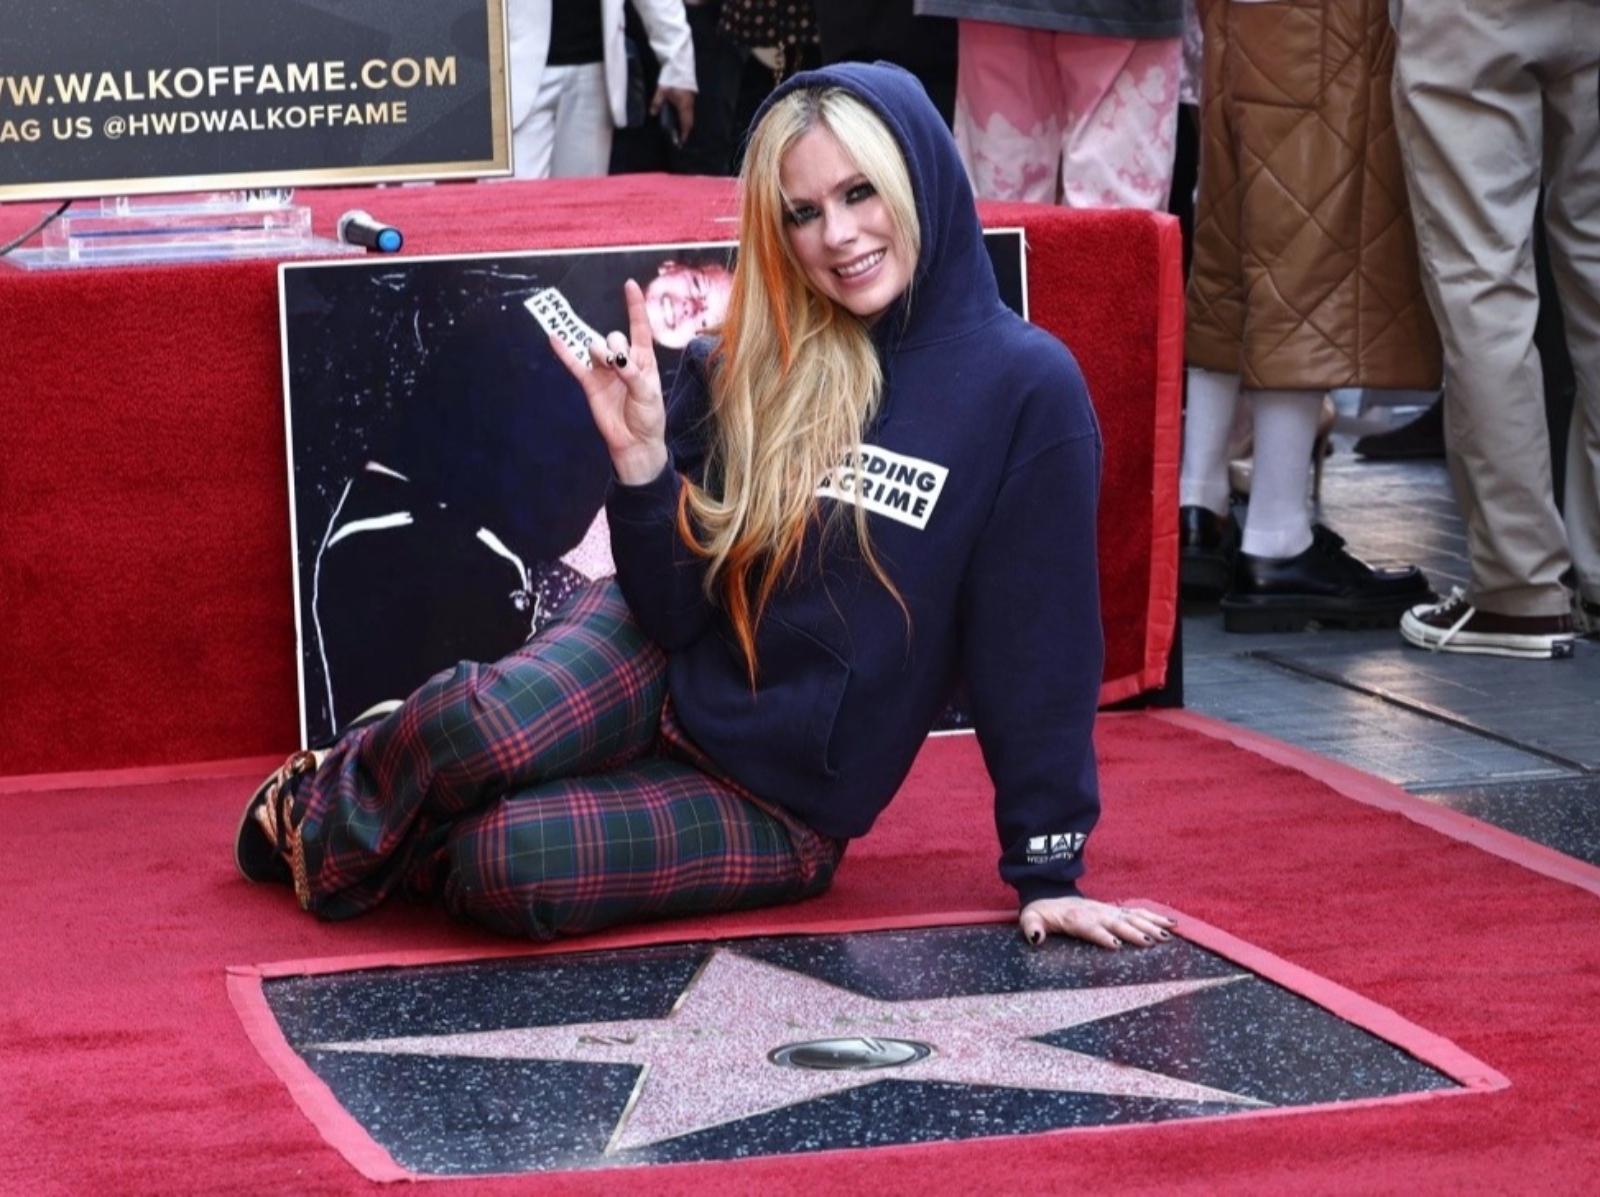 艾薇兒 Avril Lavigne 出道 21 年終於名留好萊塢星光大道，「穿上 16 歲同款帽 T」躺地上興奮合影！